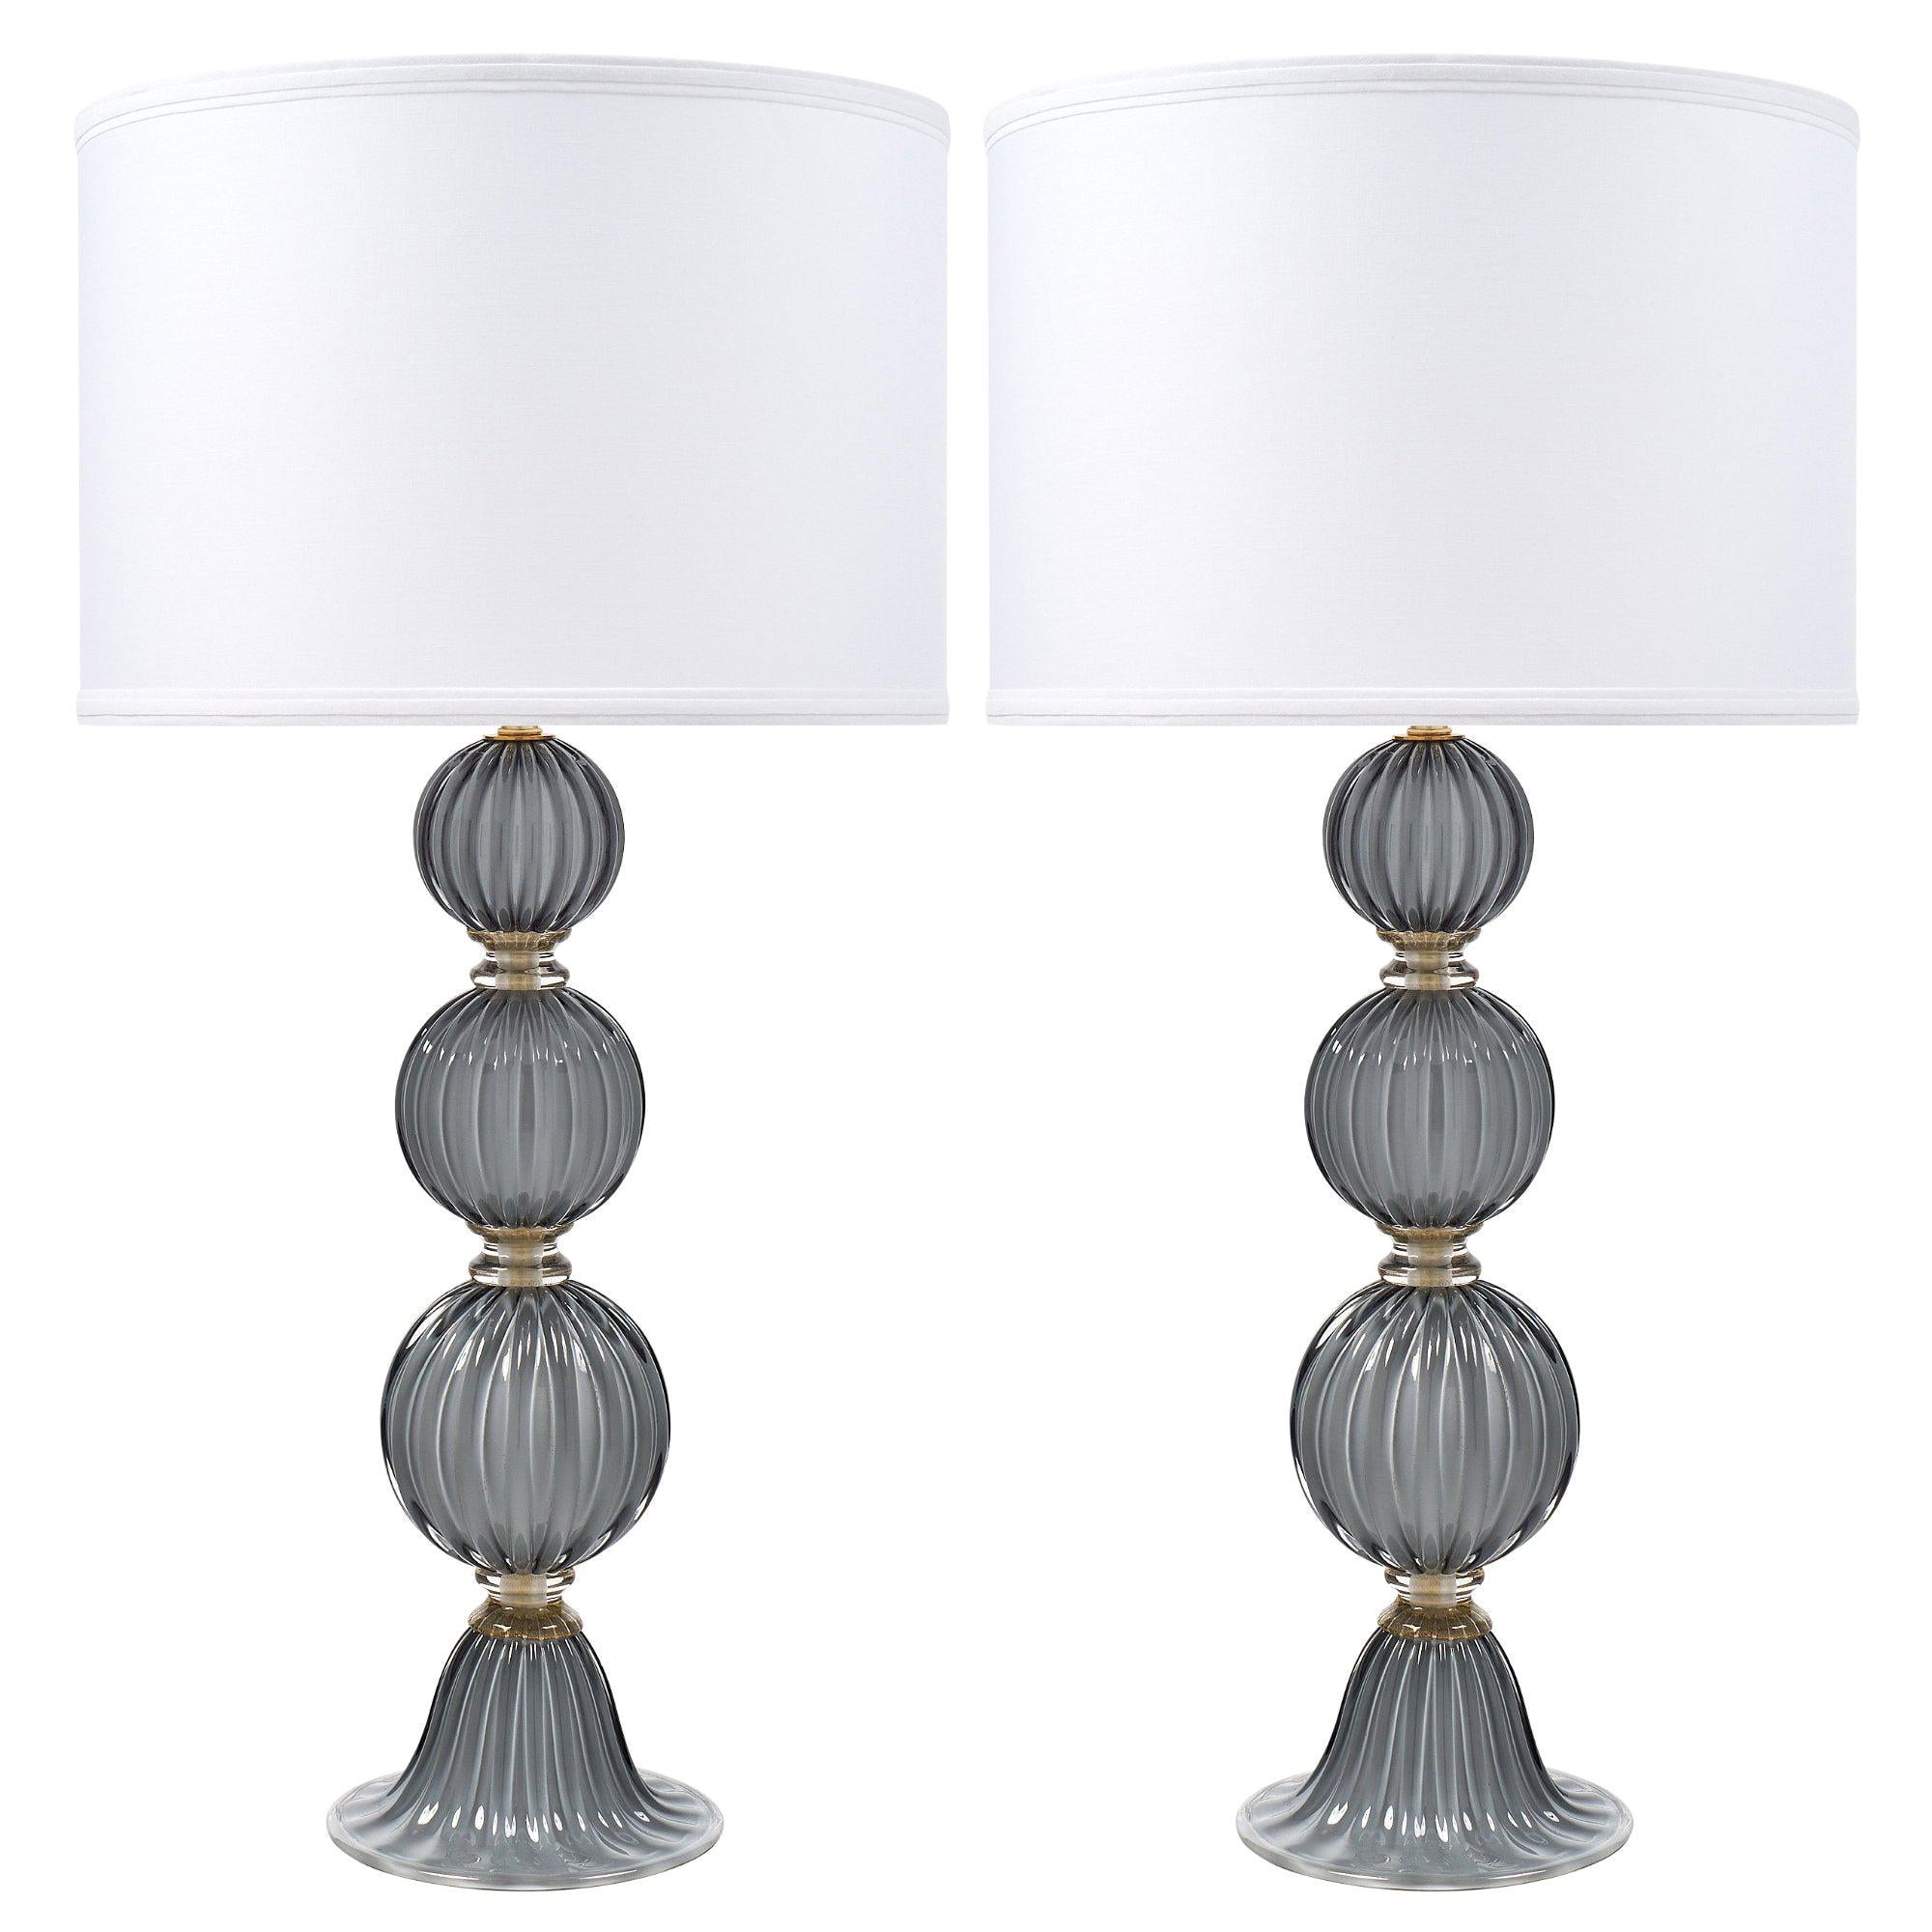 “Acciaio” Italian Murano Glass Lamps